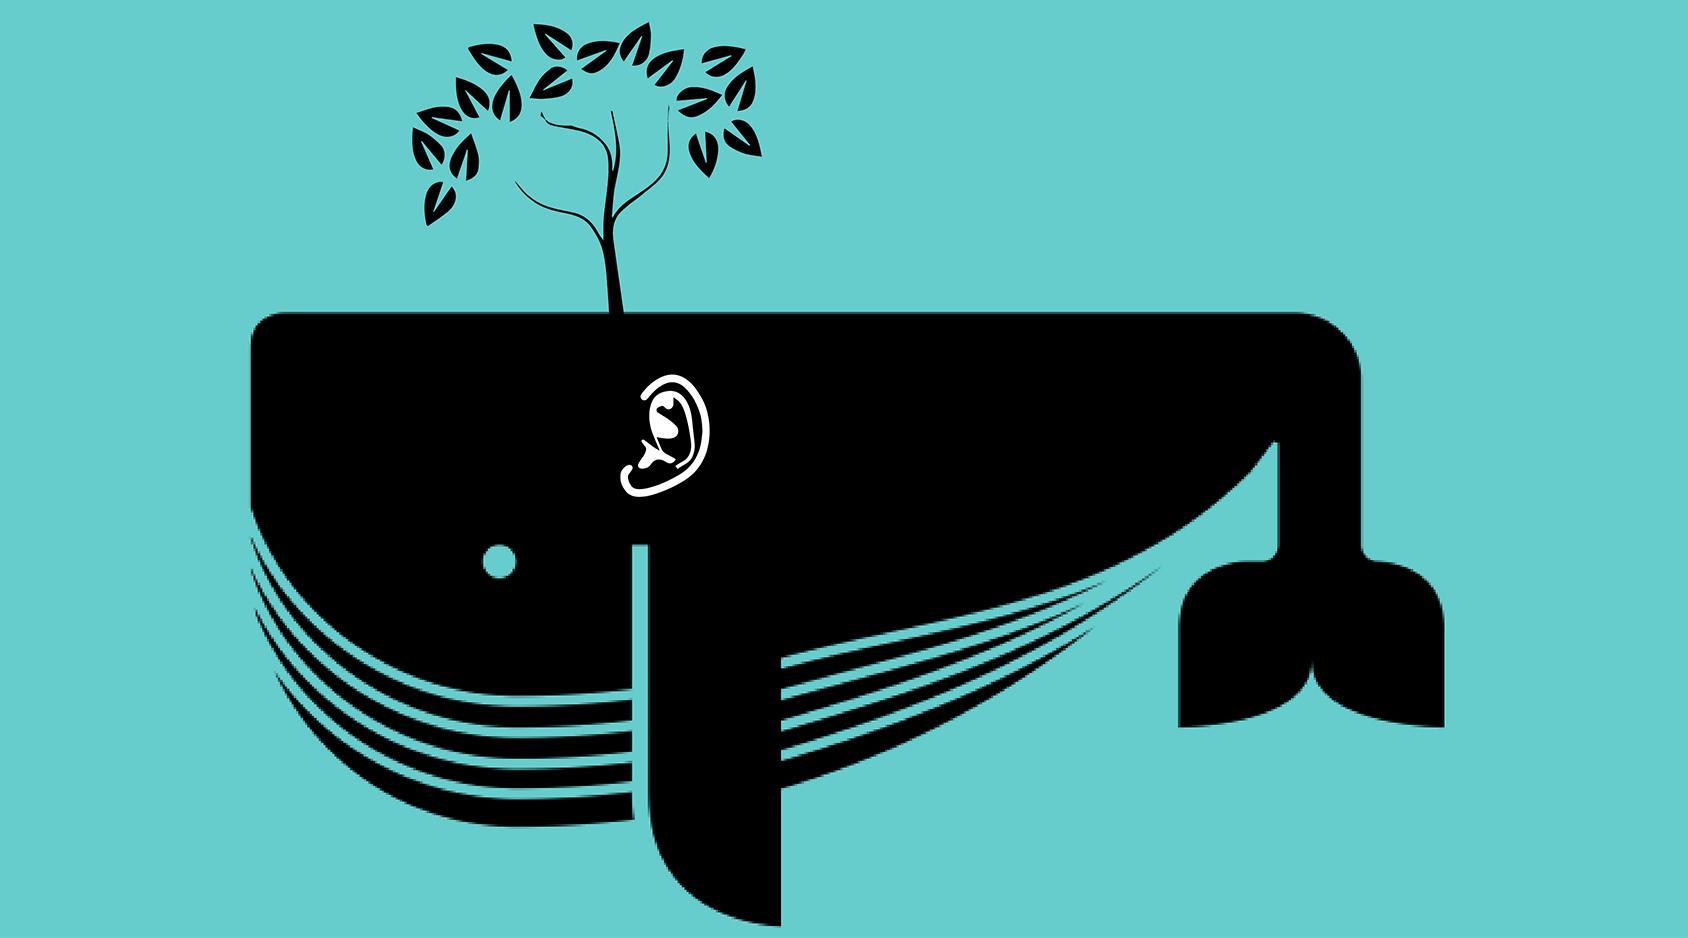 walvissen zijn bomen? (© Lie van Roeyen | dwars)